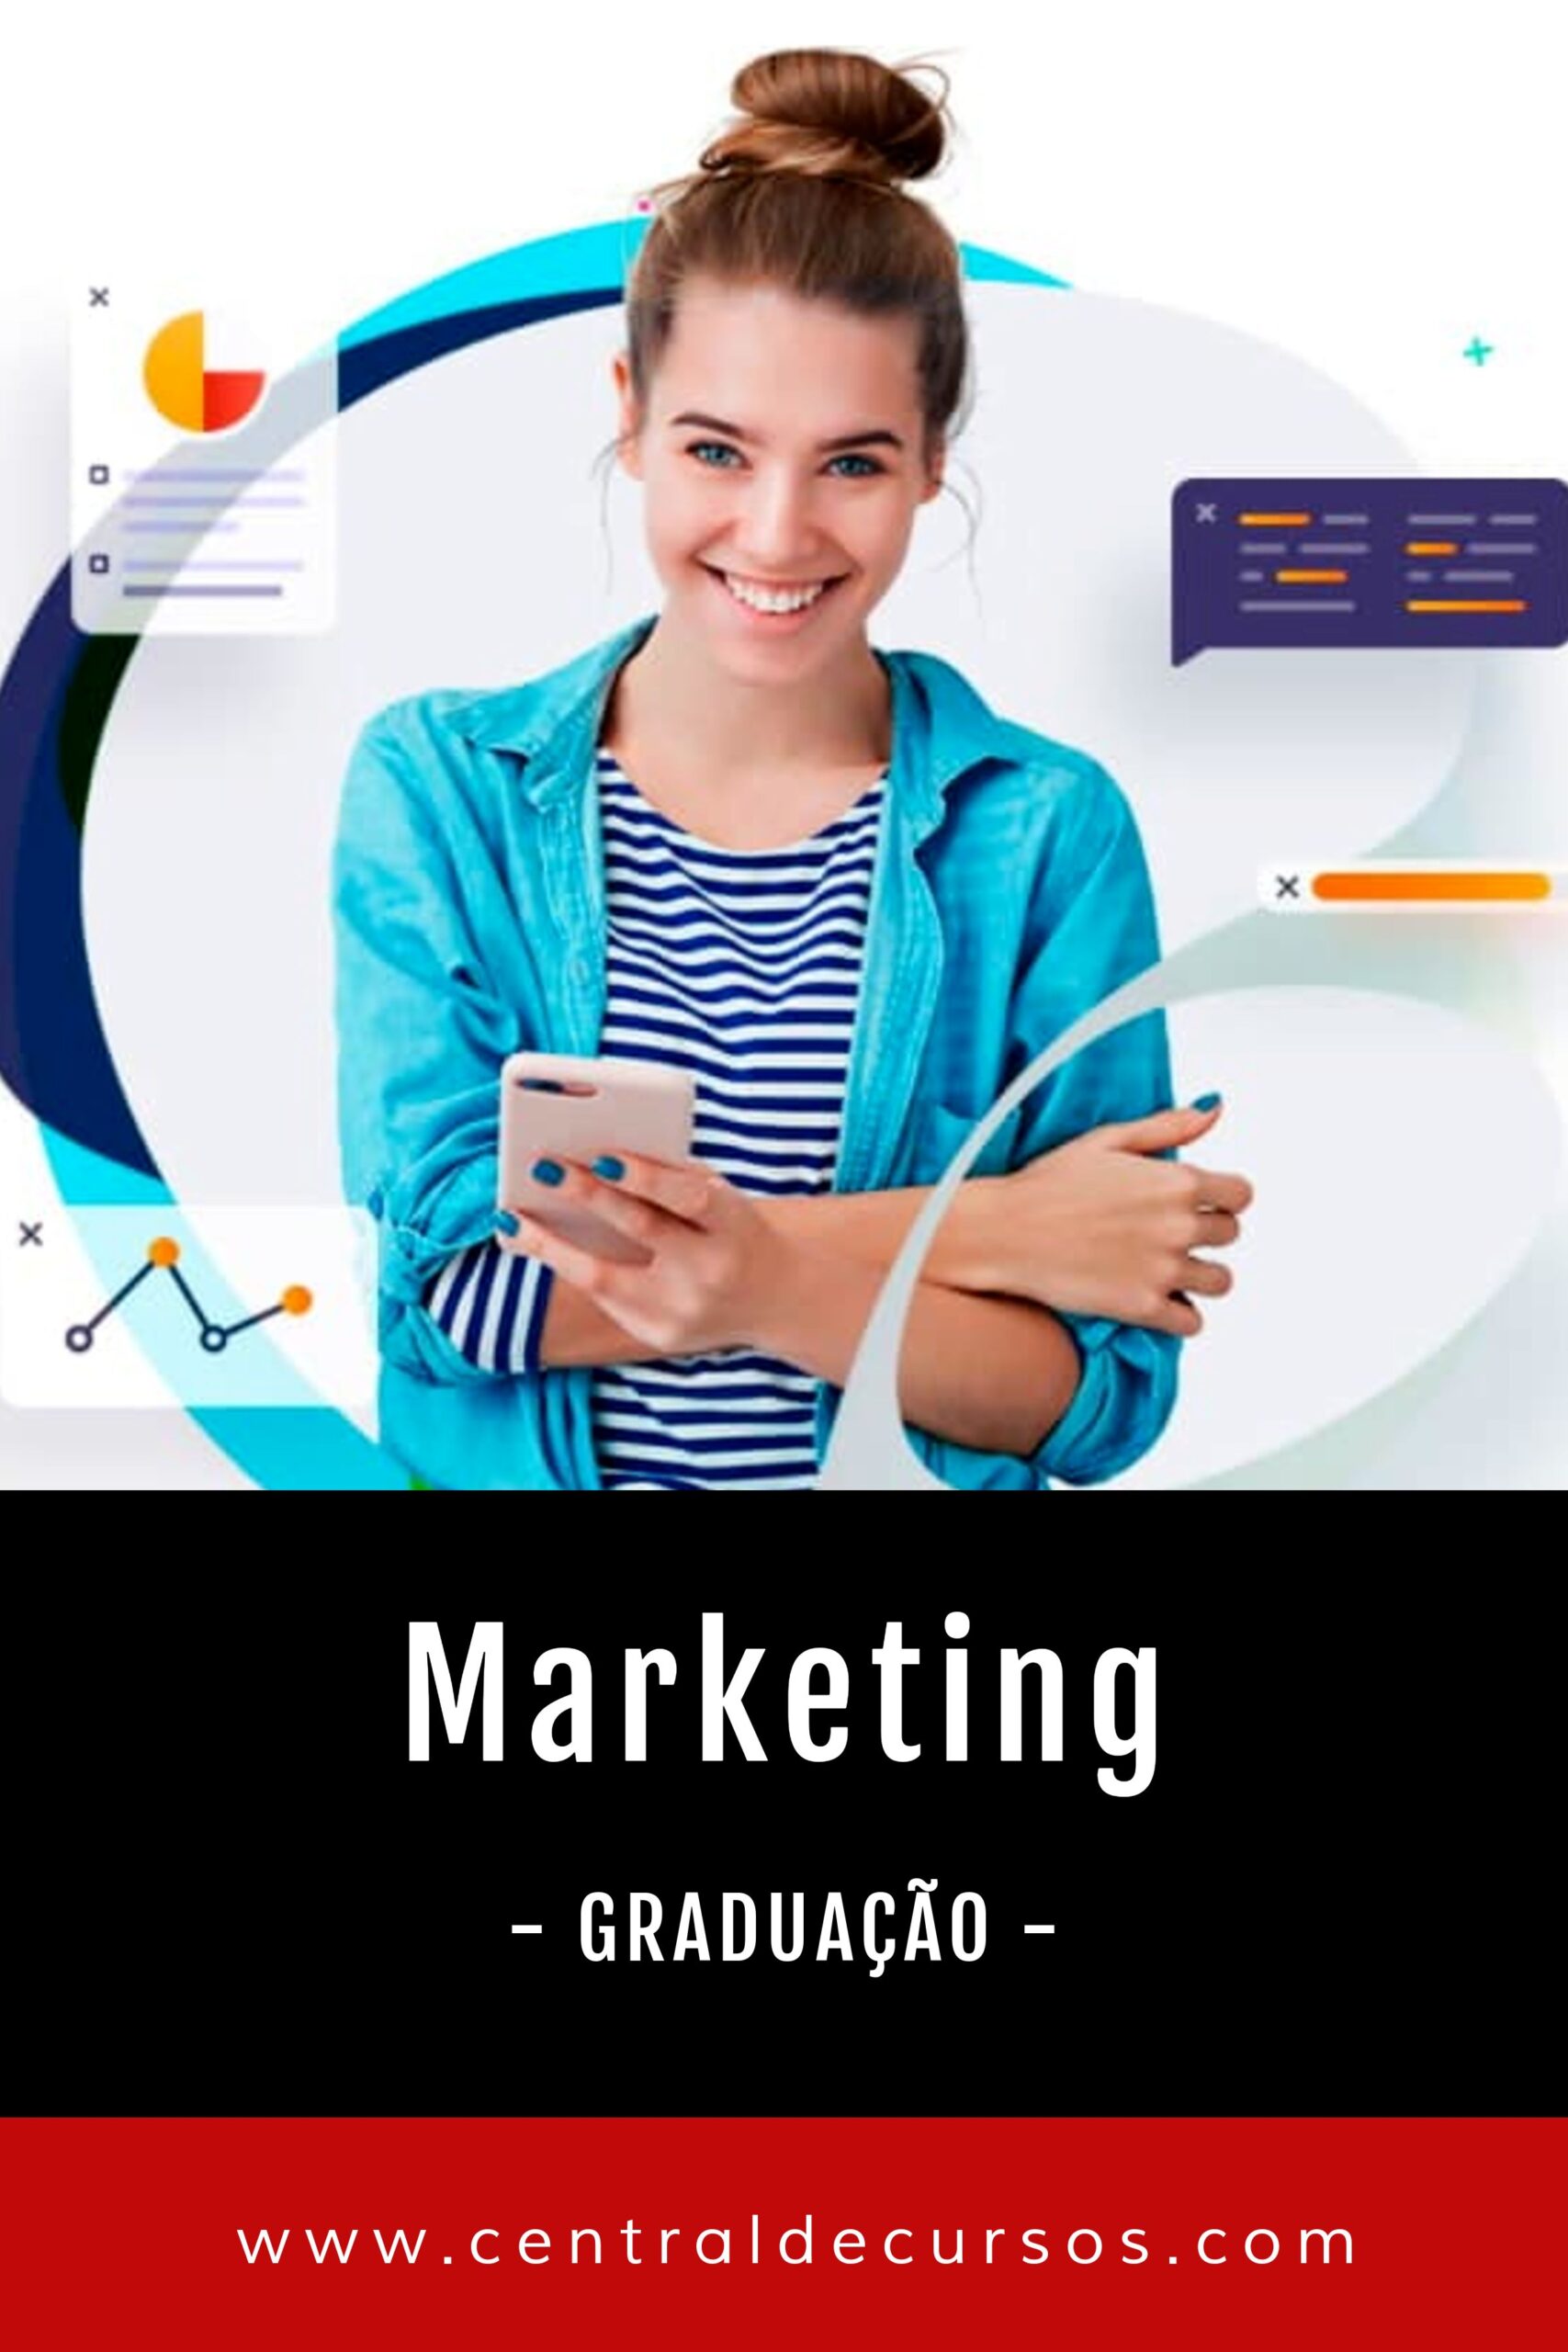 Graduação em marketing digital